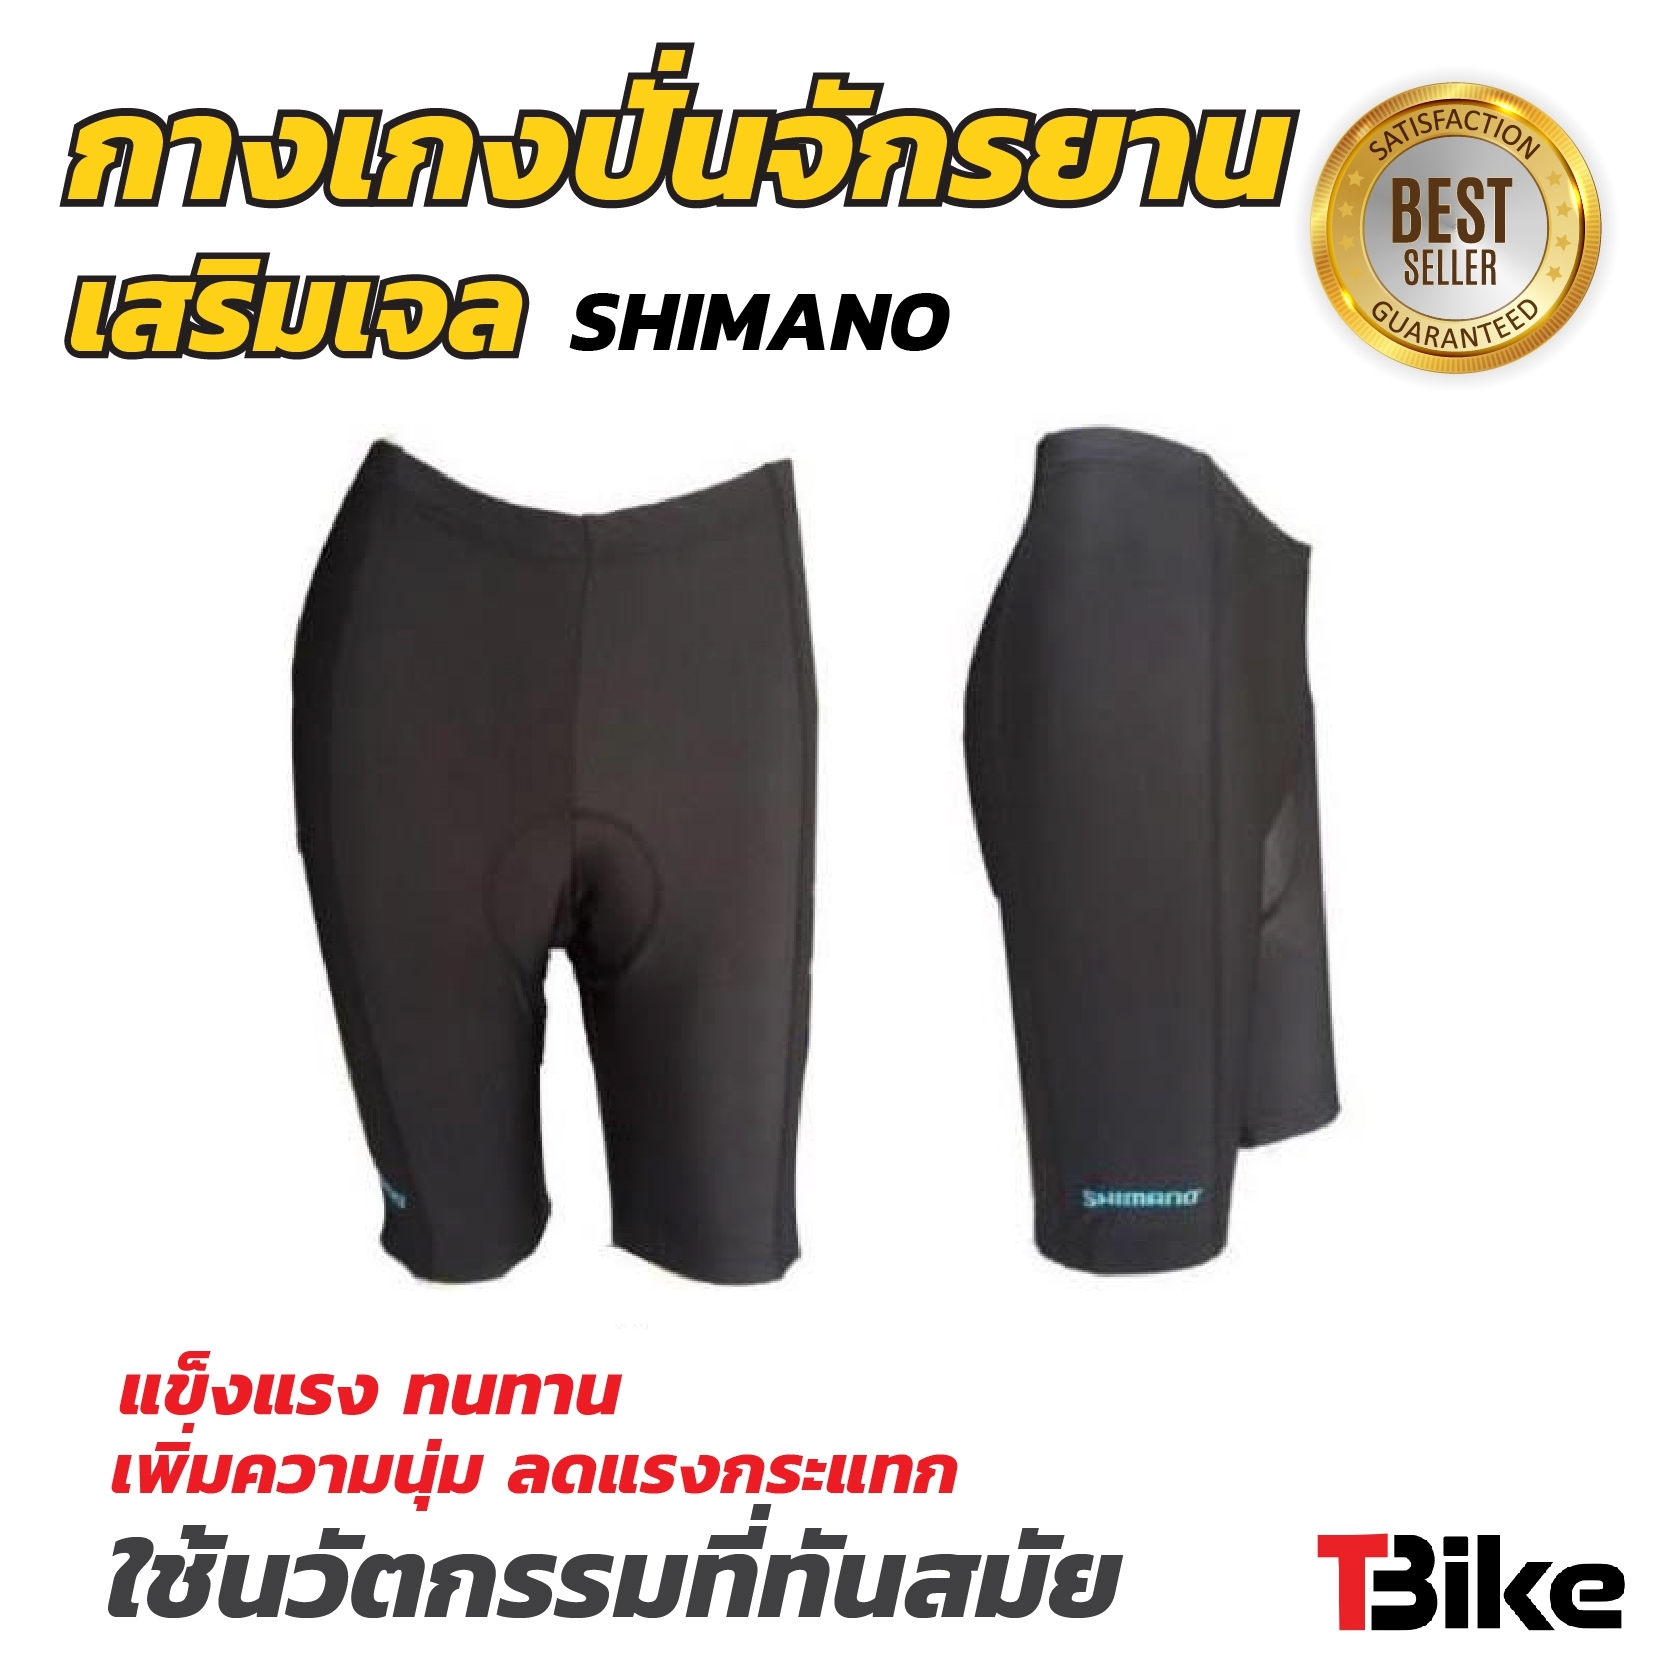 กางเกงปั่นจักรยาน ไซส์ M กางเกงขาสั้น ยี่ห้อ SHIMANO ใส่ปั่นจักรยาน  ใส่สบาย ไซส์ M  สำหรับเอว 28-32